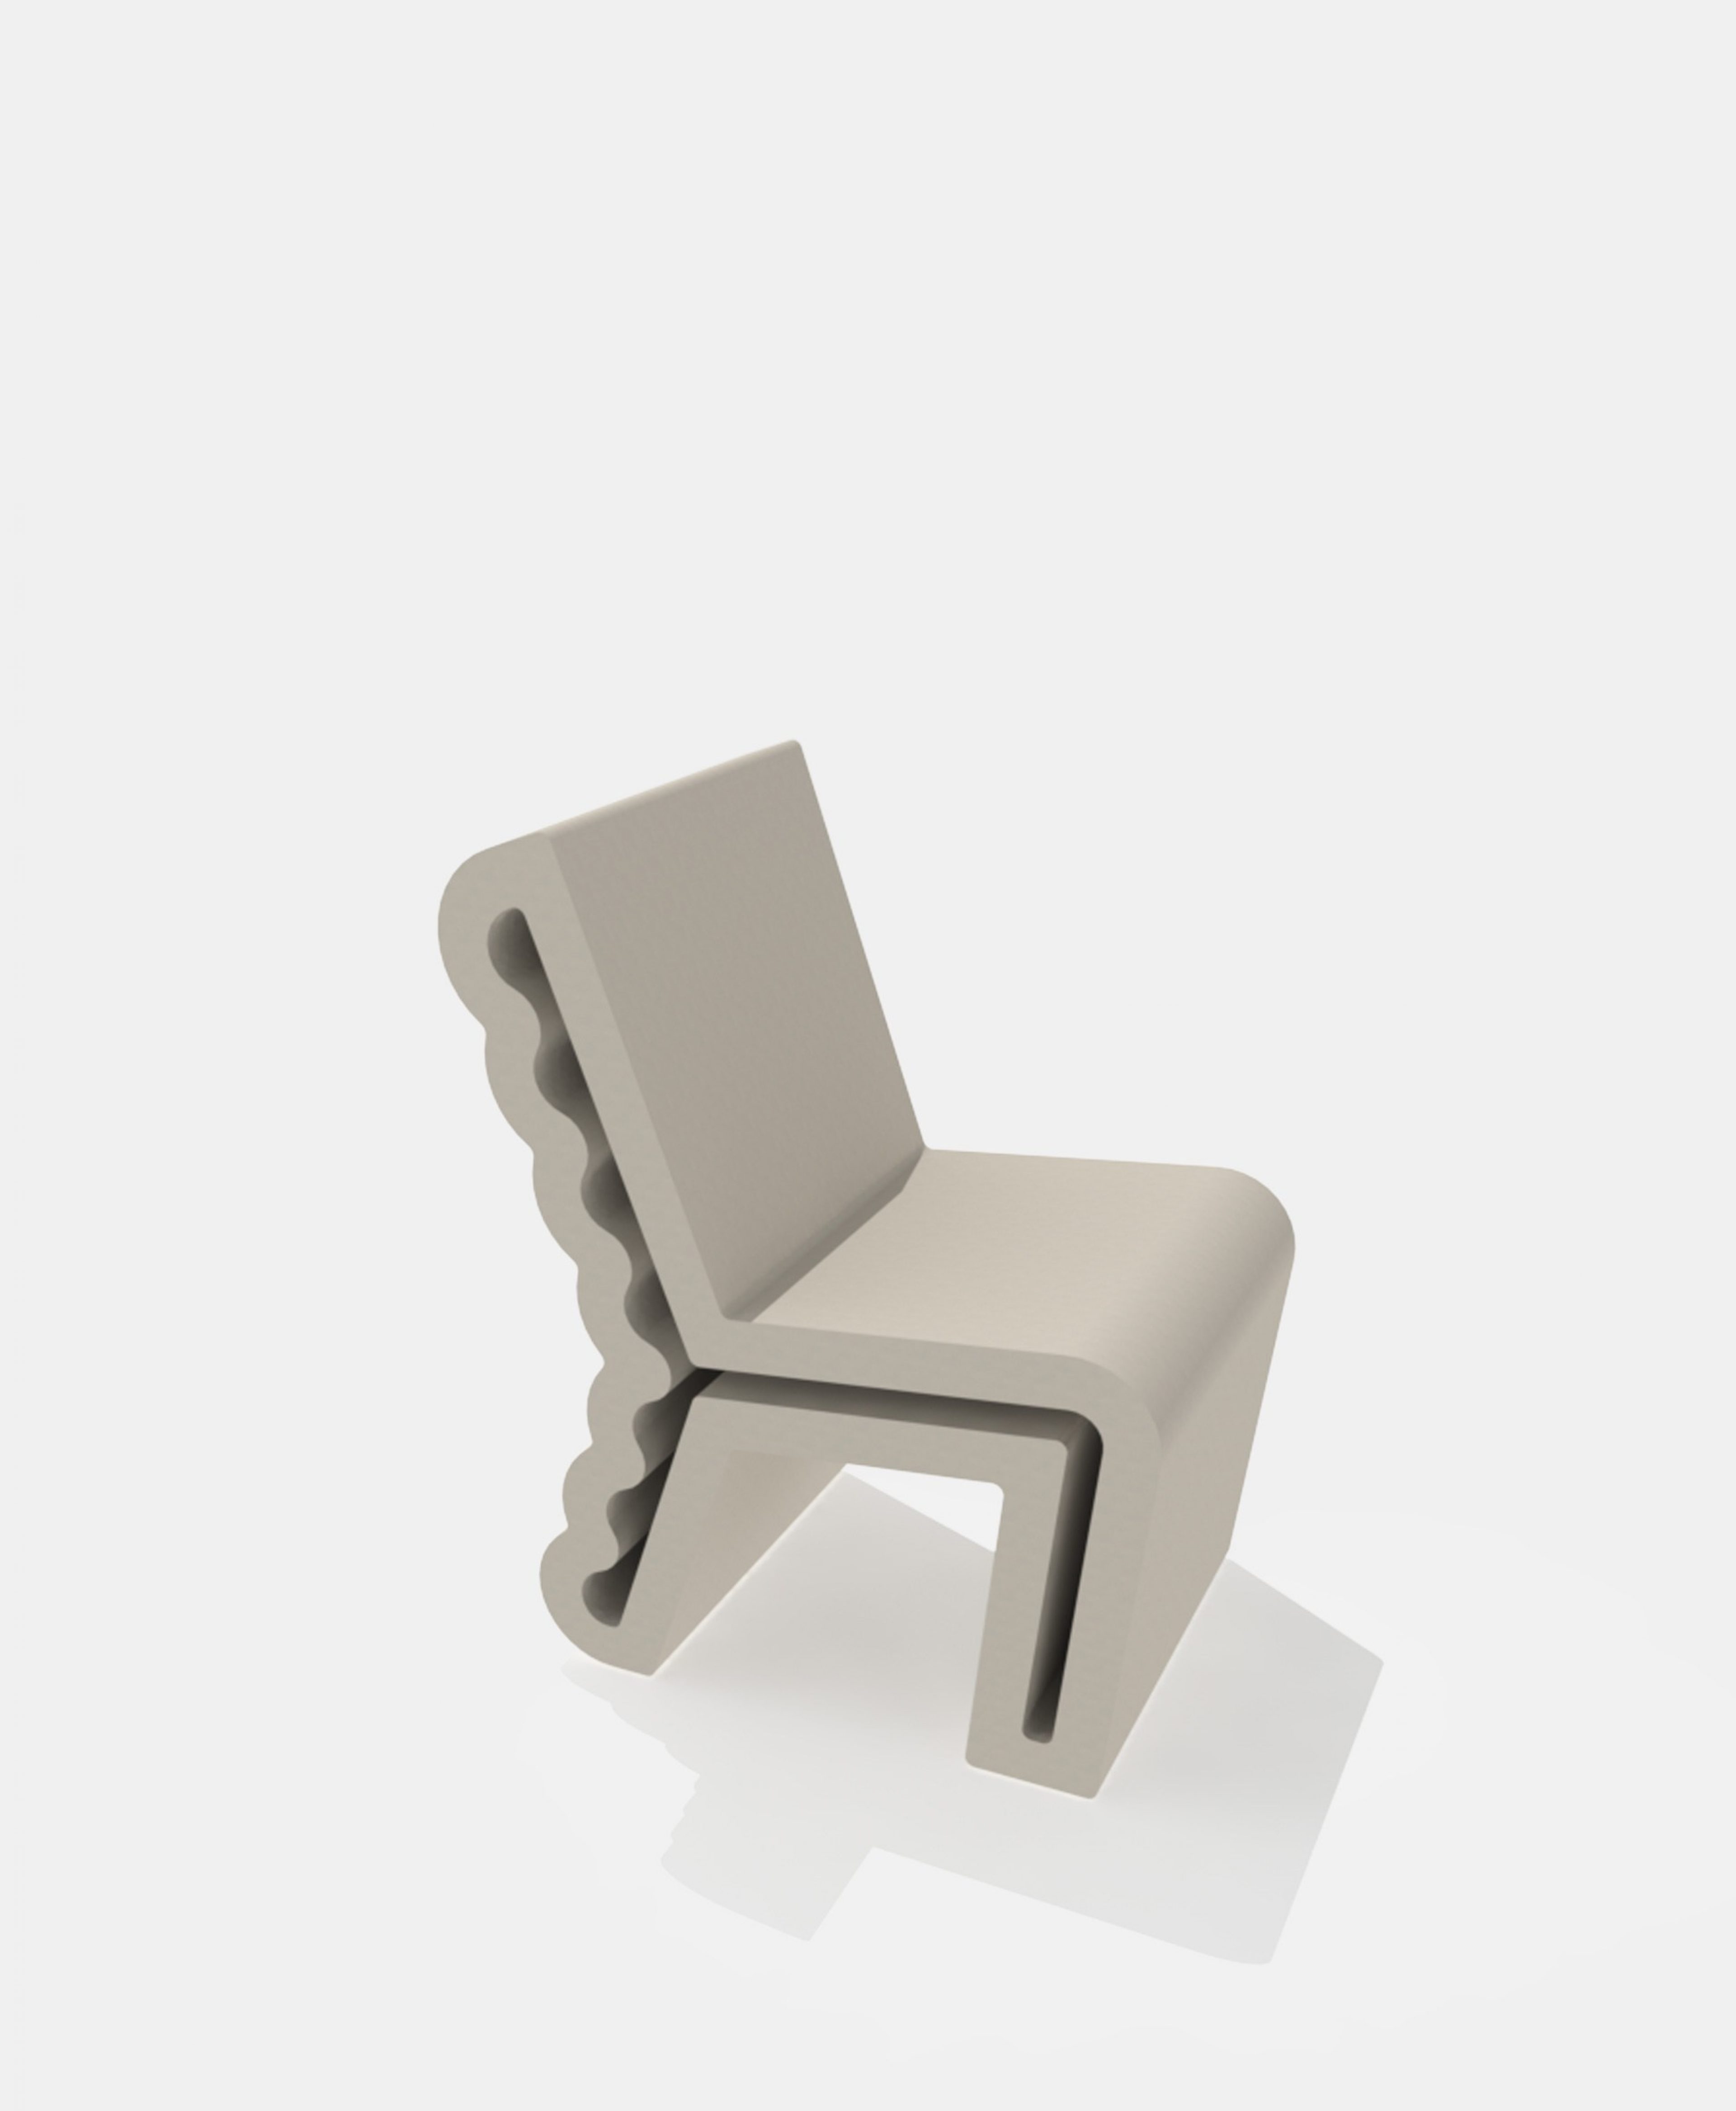 Concrete print
Chair Eline